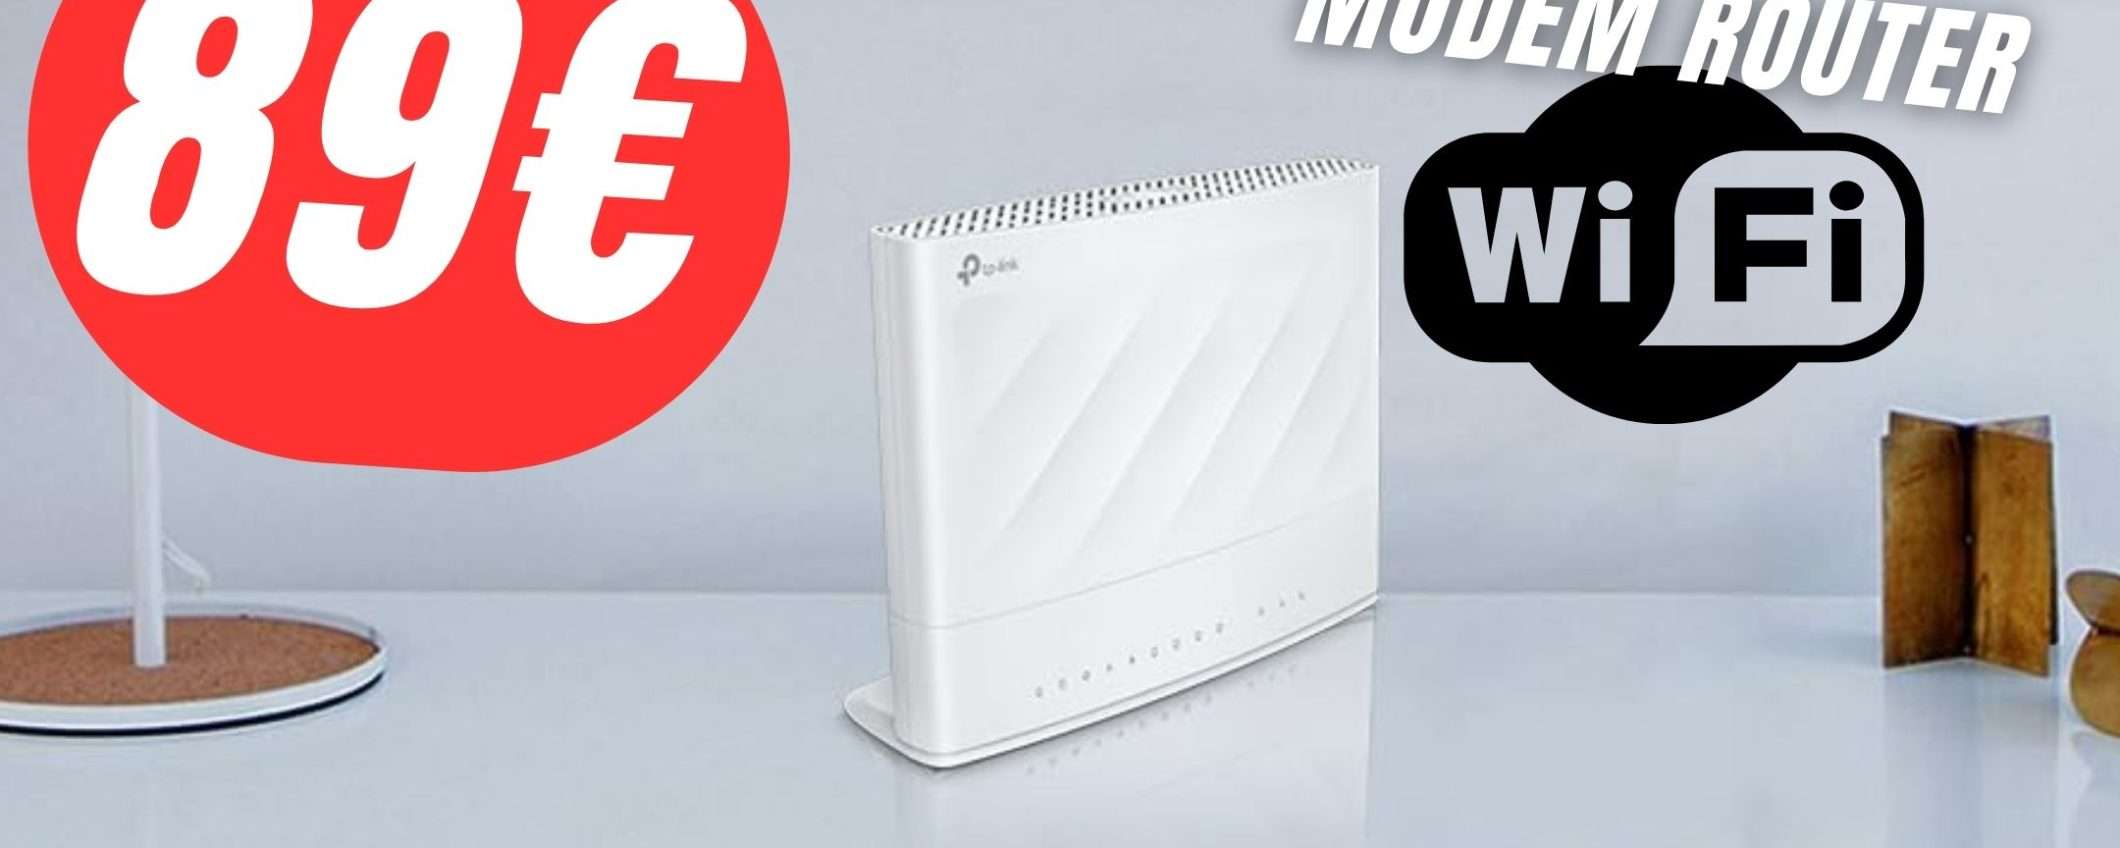 Con questo Modem Router WiFi risolverai tutti i tuoi problemi di connessione!